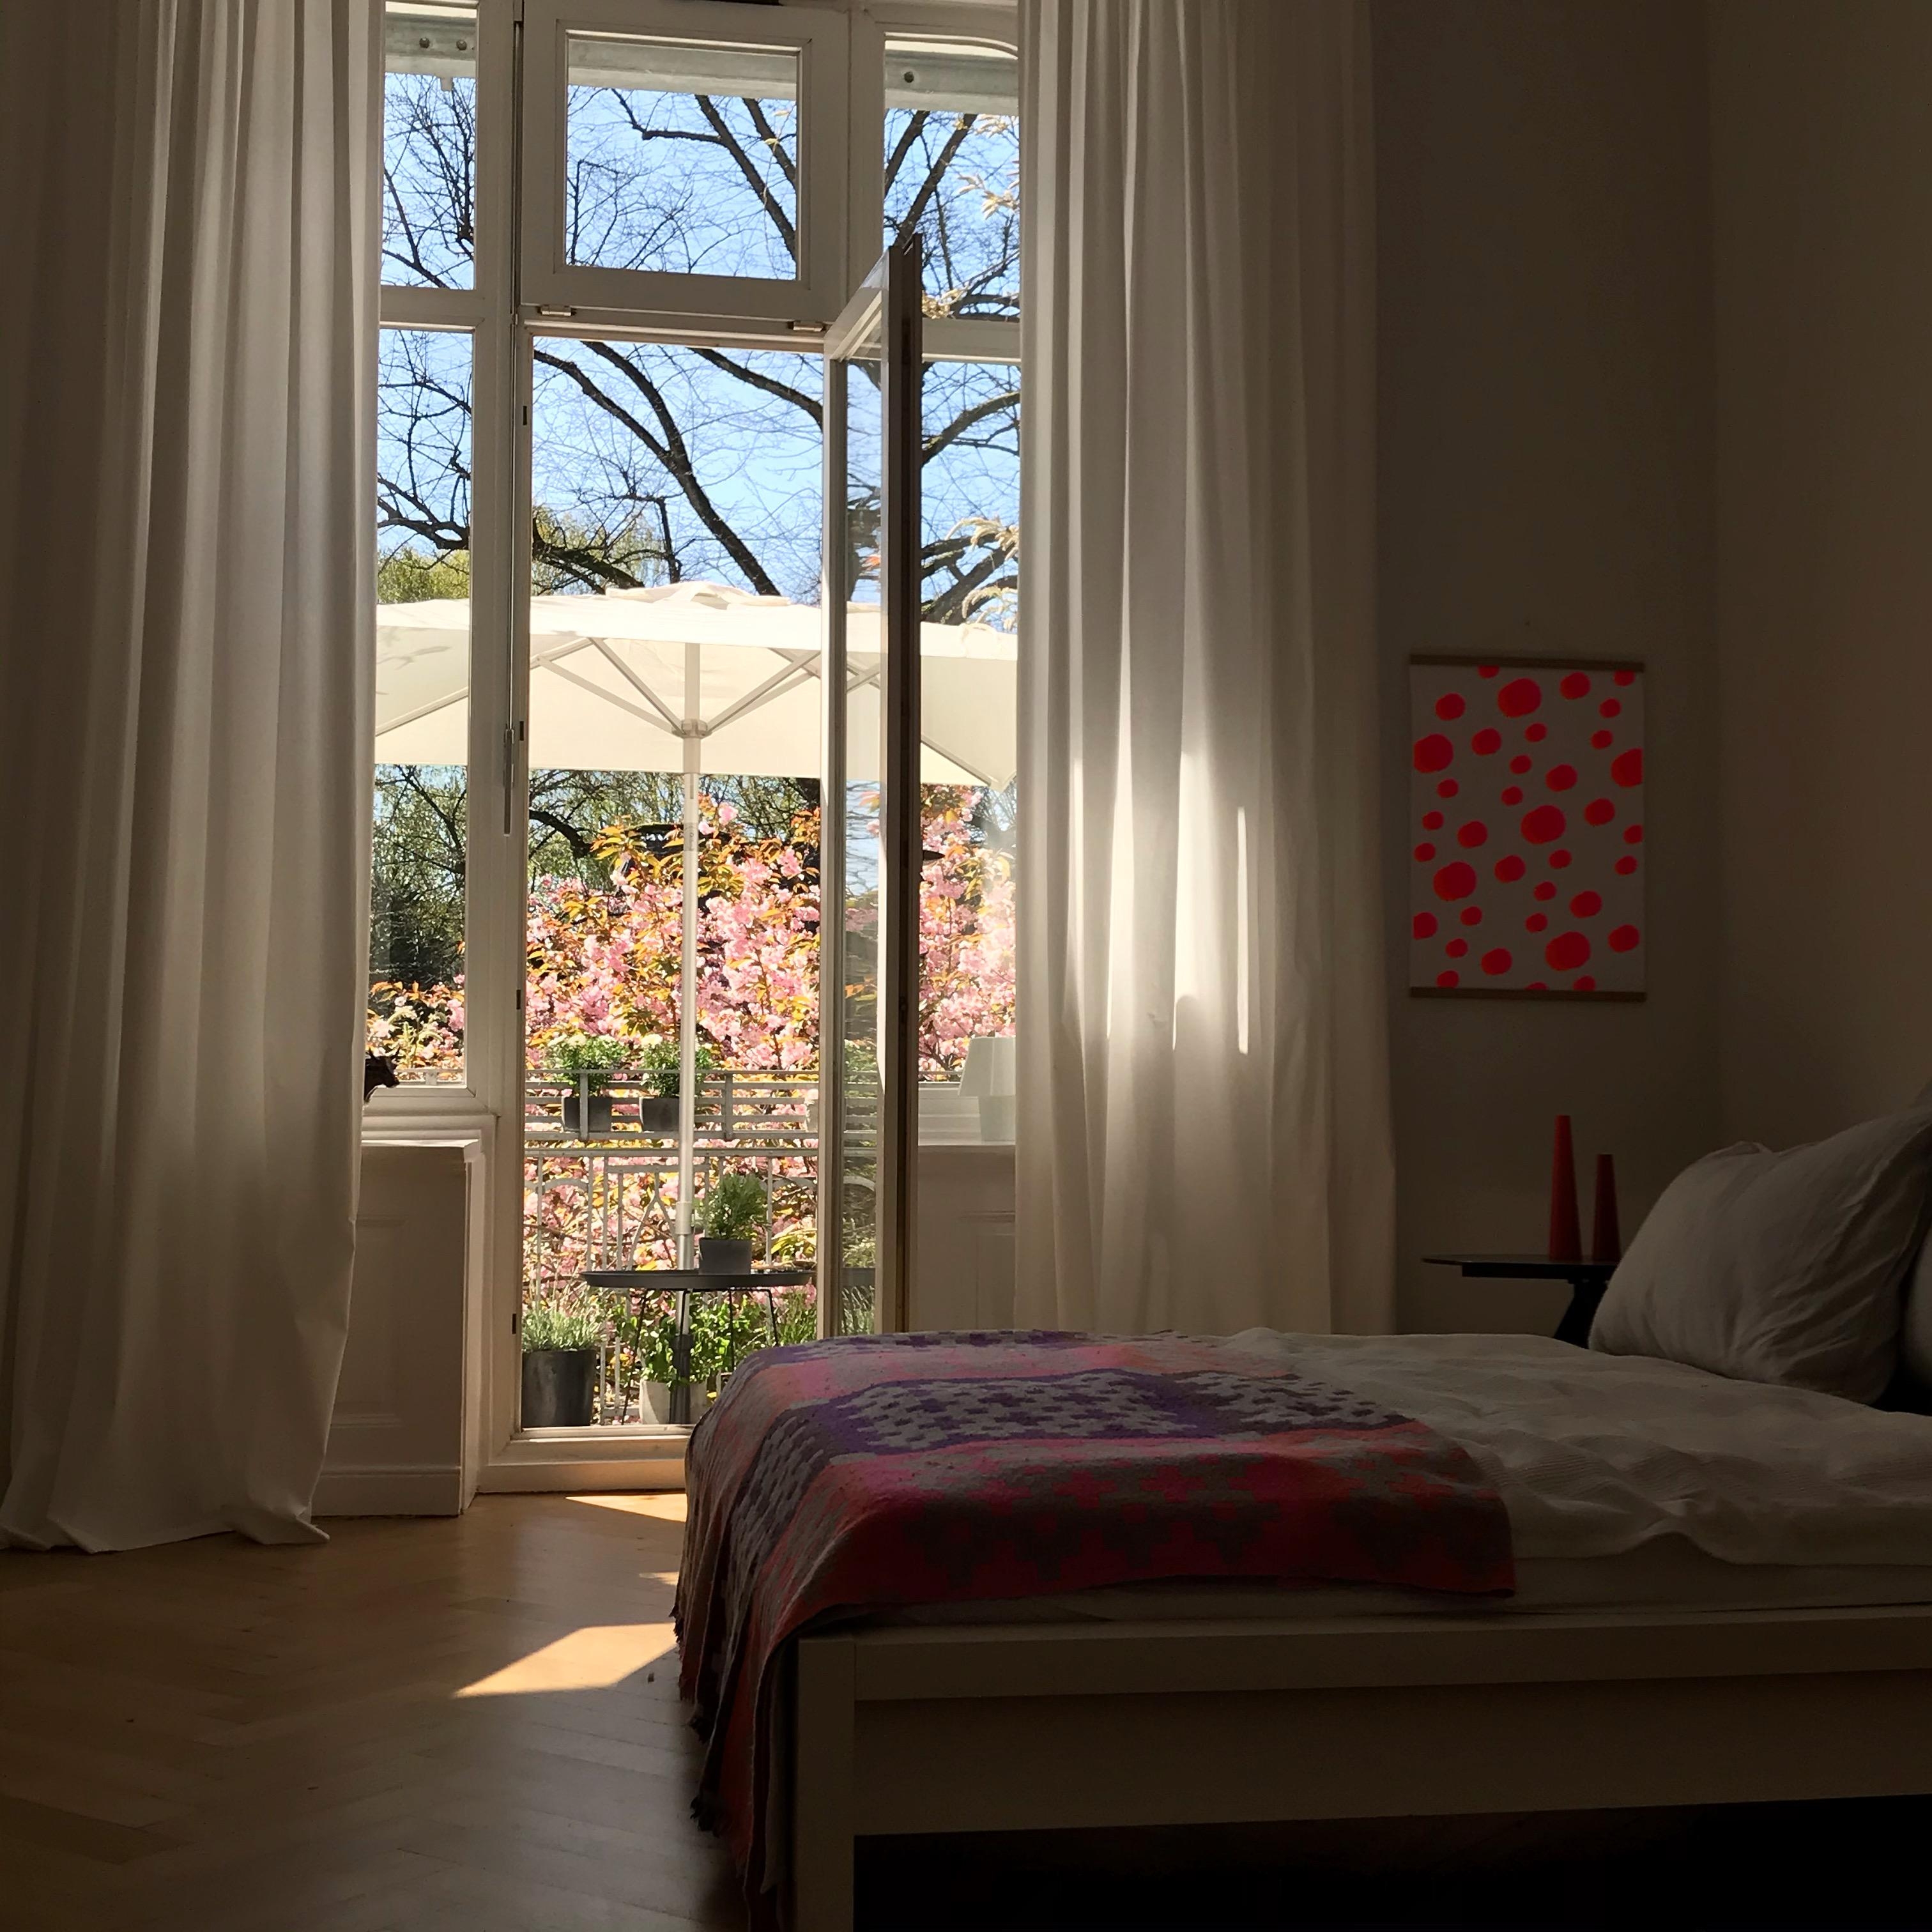 #balkon #kirschblüte #altbau #schlafzimmer #bedroom #frühling
#windowview
